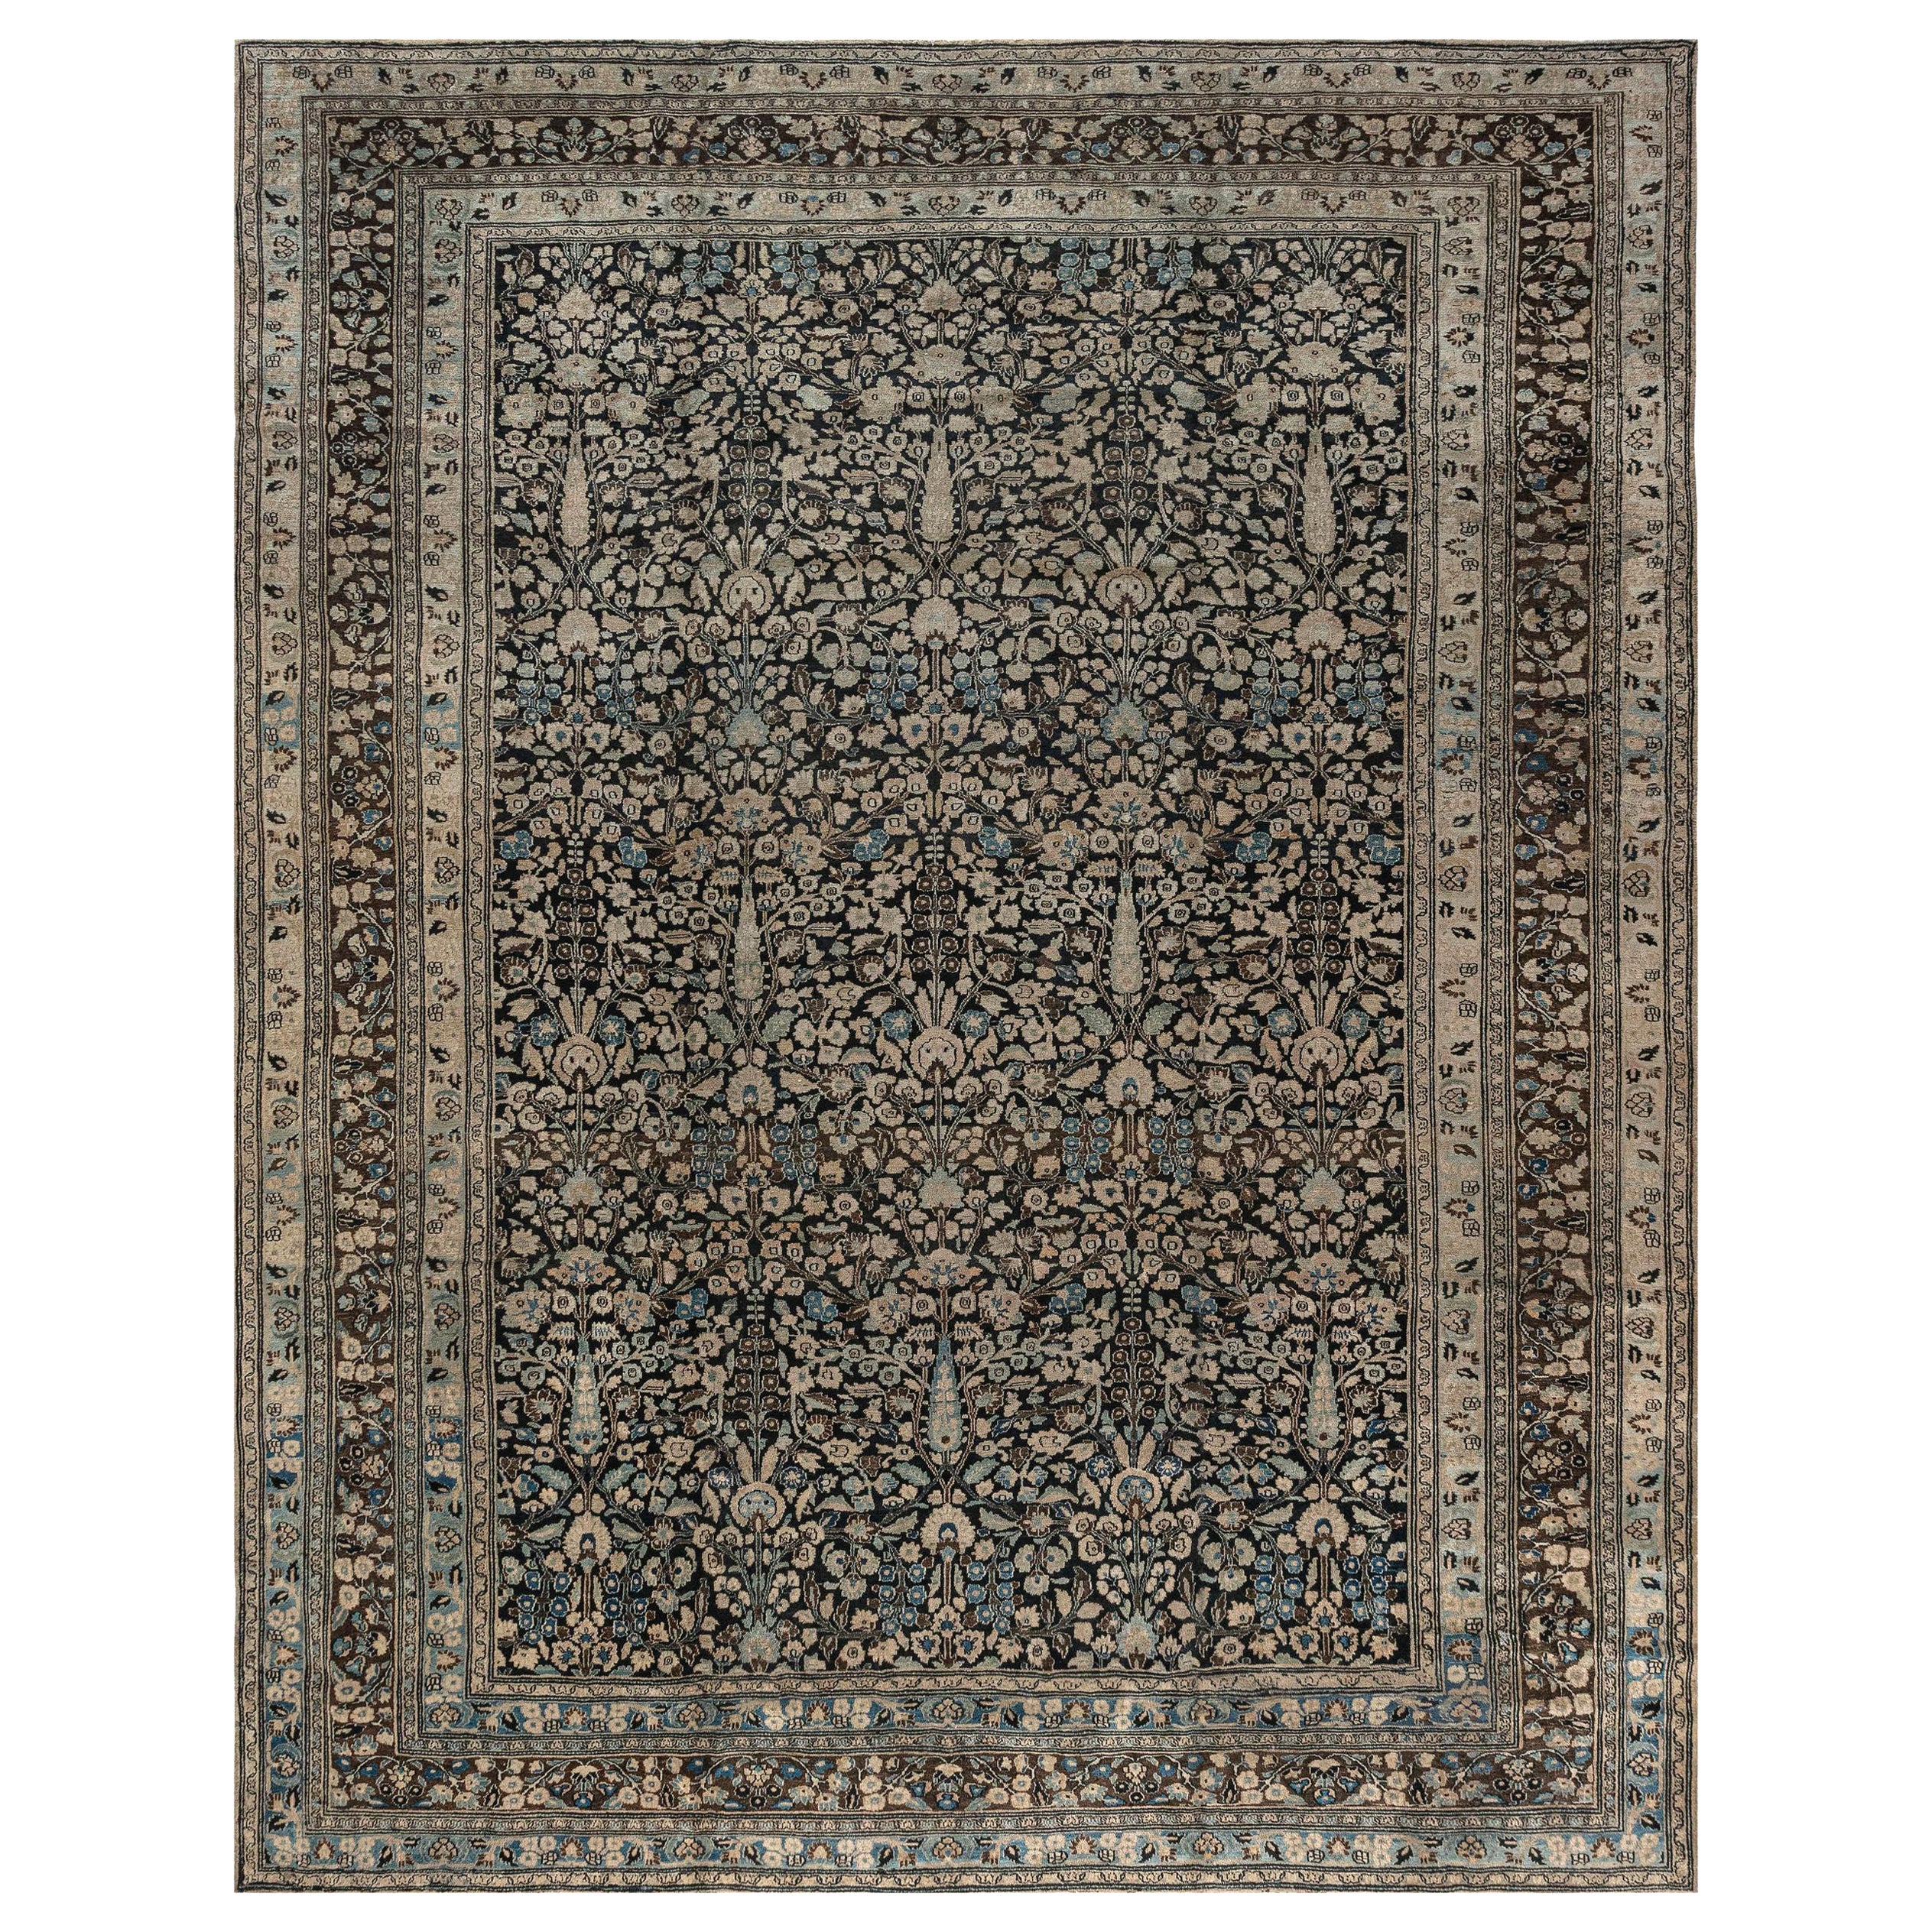 Authentic 19th Century Persian Meshad Carpet